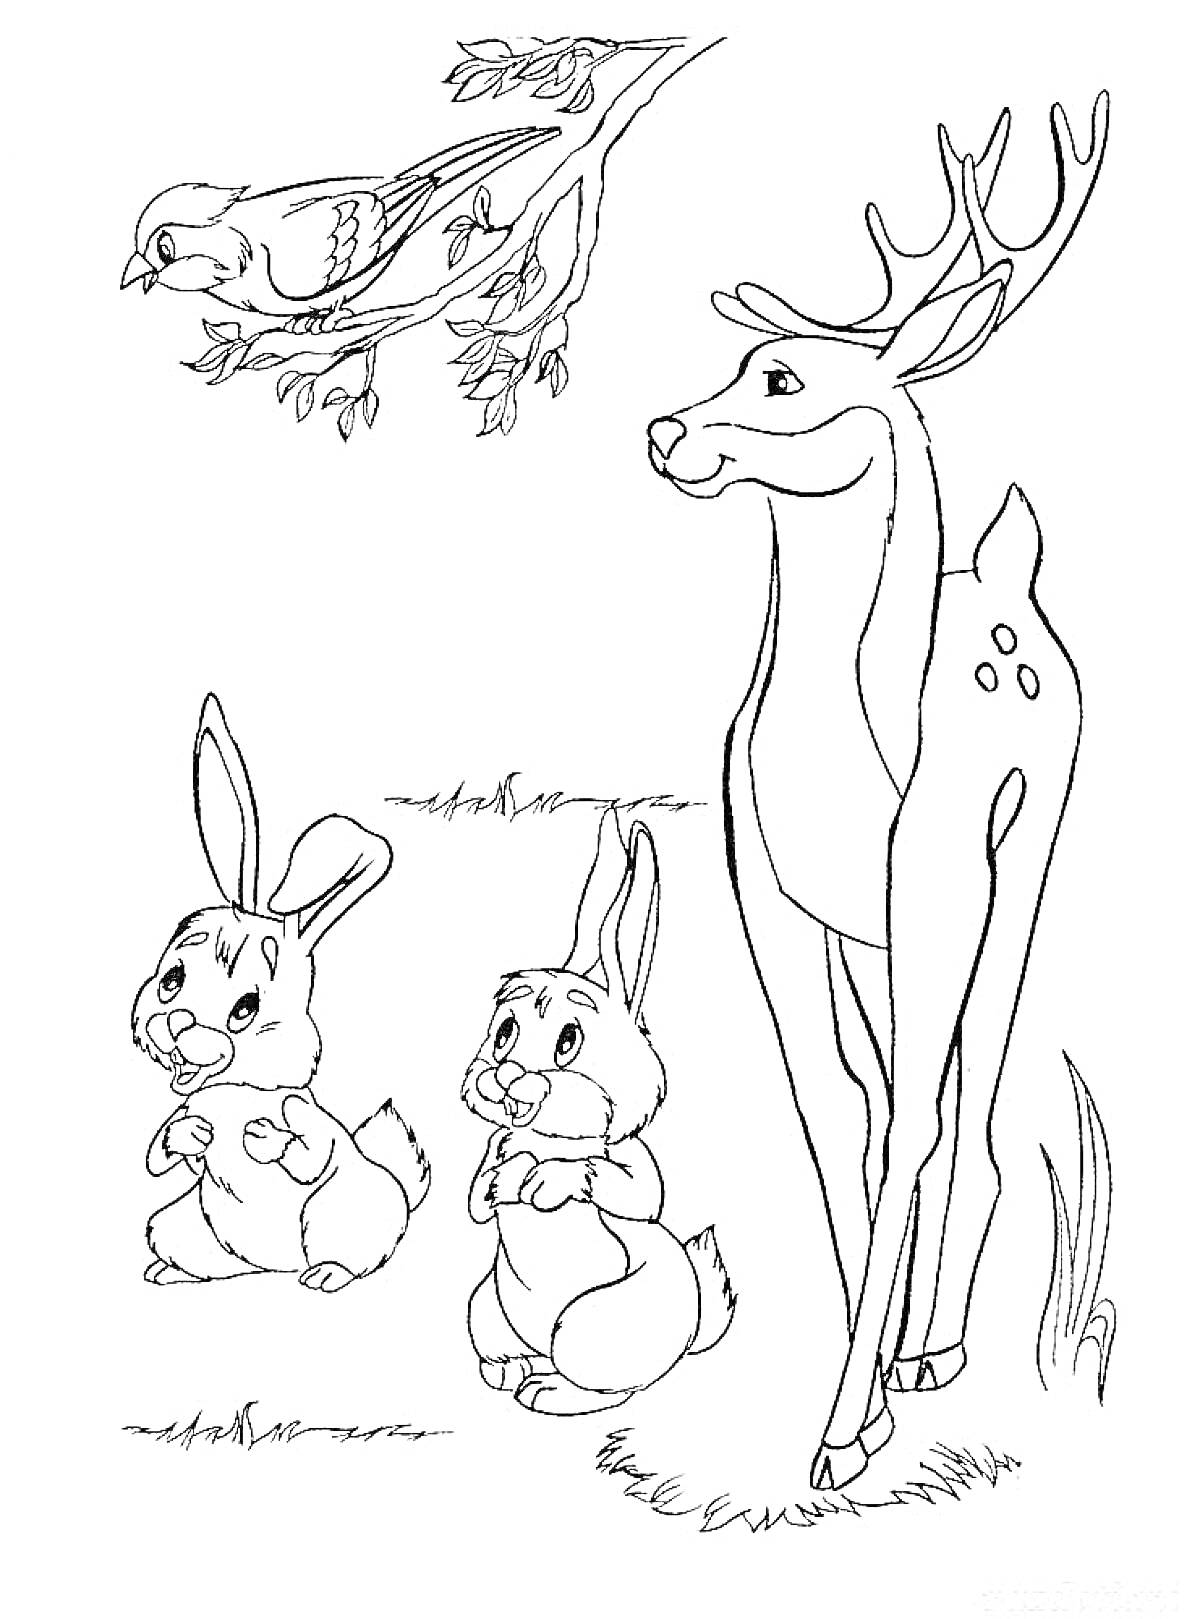 Раскраска Лесные животные: олень, два зайца и птица на ветке деревья